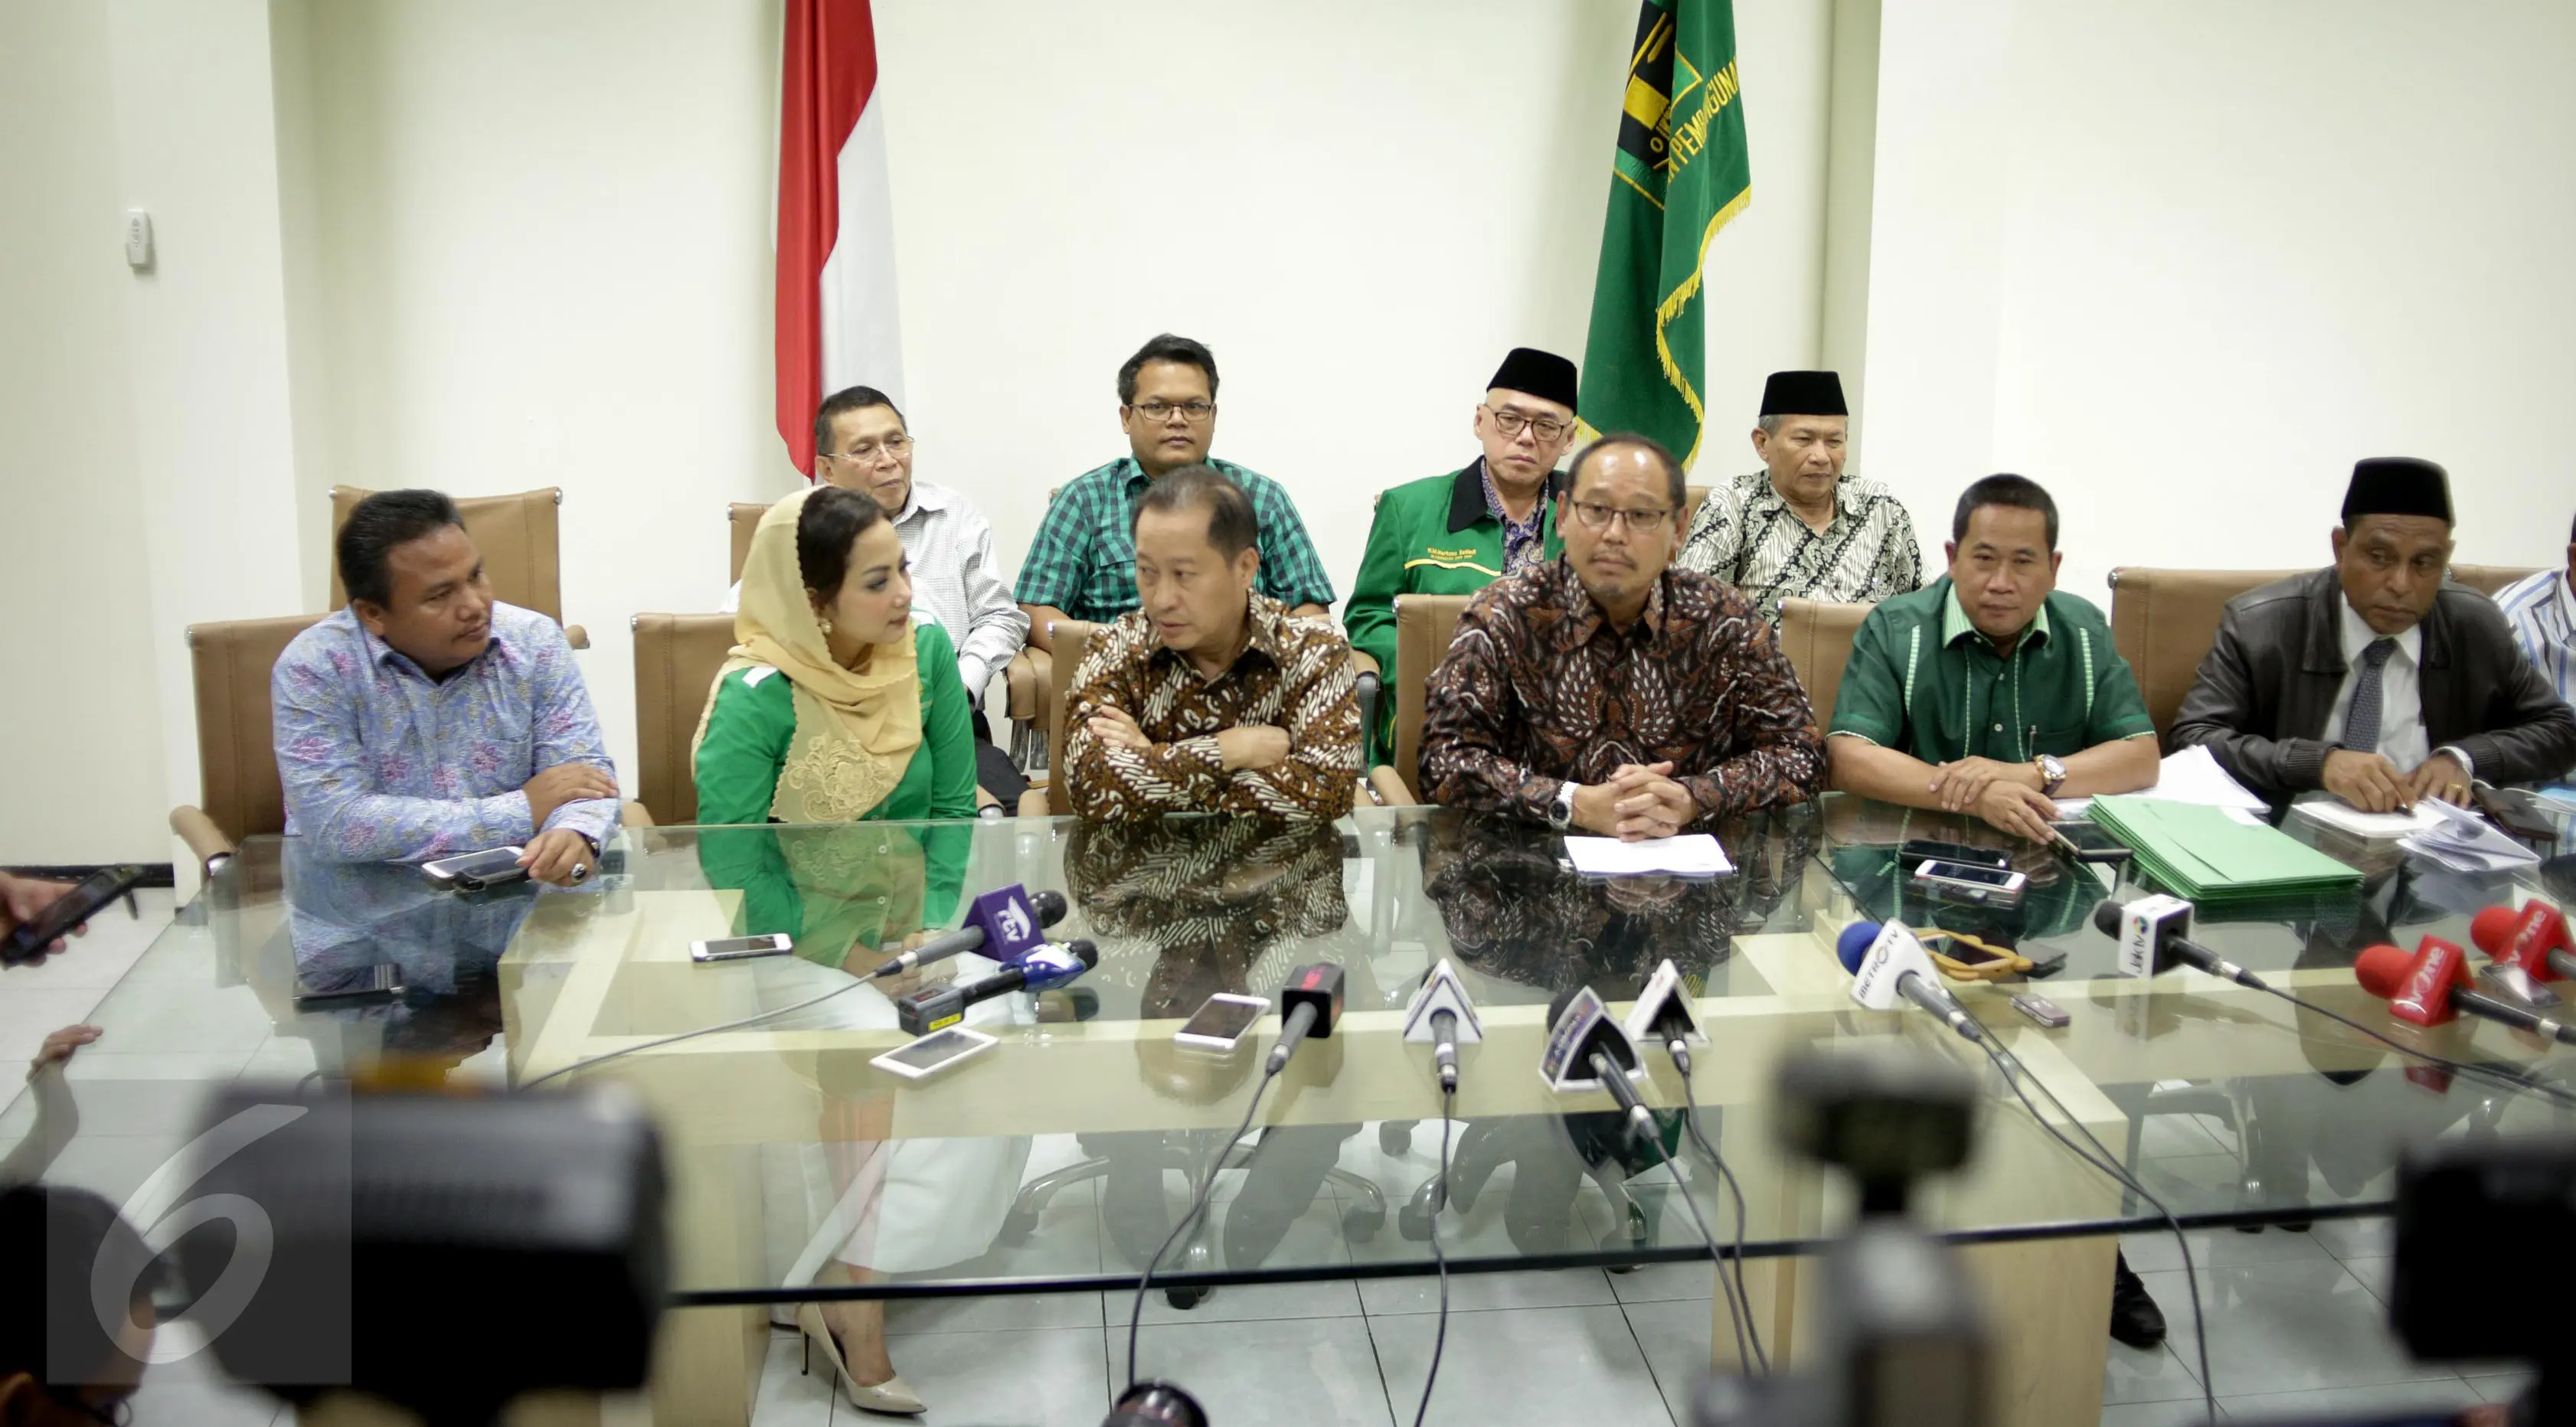 Ketua Umum DPP Partai Persatuan Pembangunan (PPP) Djan Faridz bersama jajarannya memberikan keterangan pers terkait pemecatan Lulung di Kantor DPP PPP, Jakarta, Senin (13/3). (Liputan6.com/Faizal Fanani)